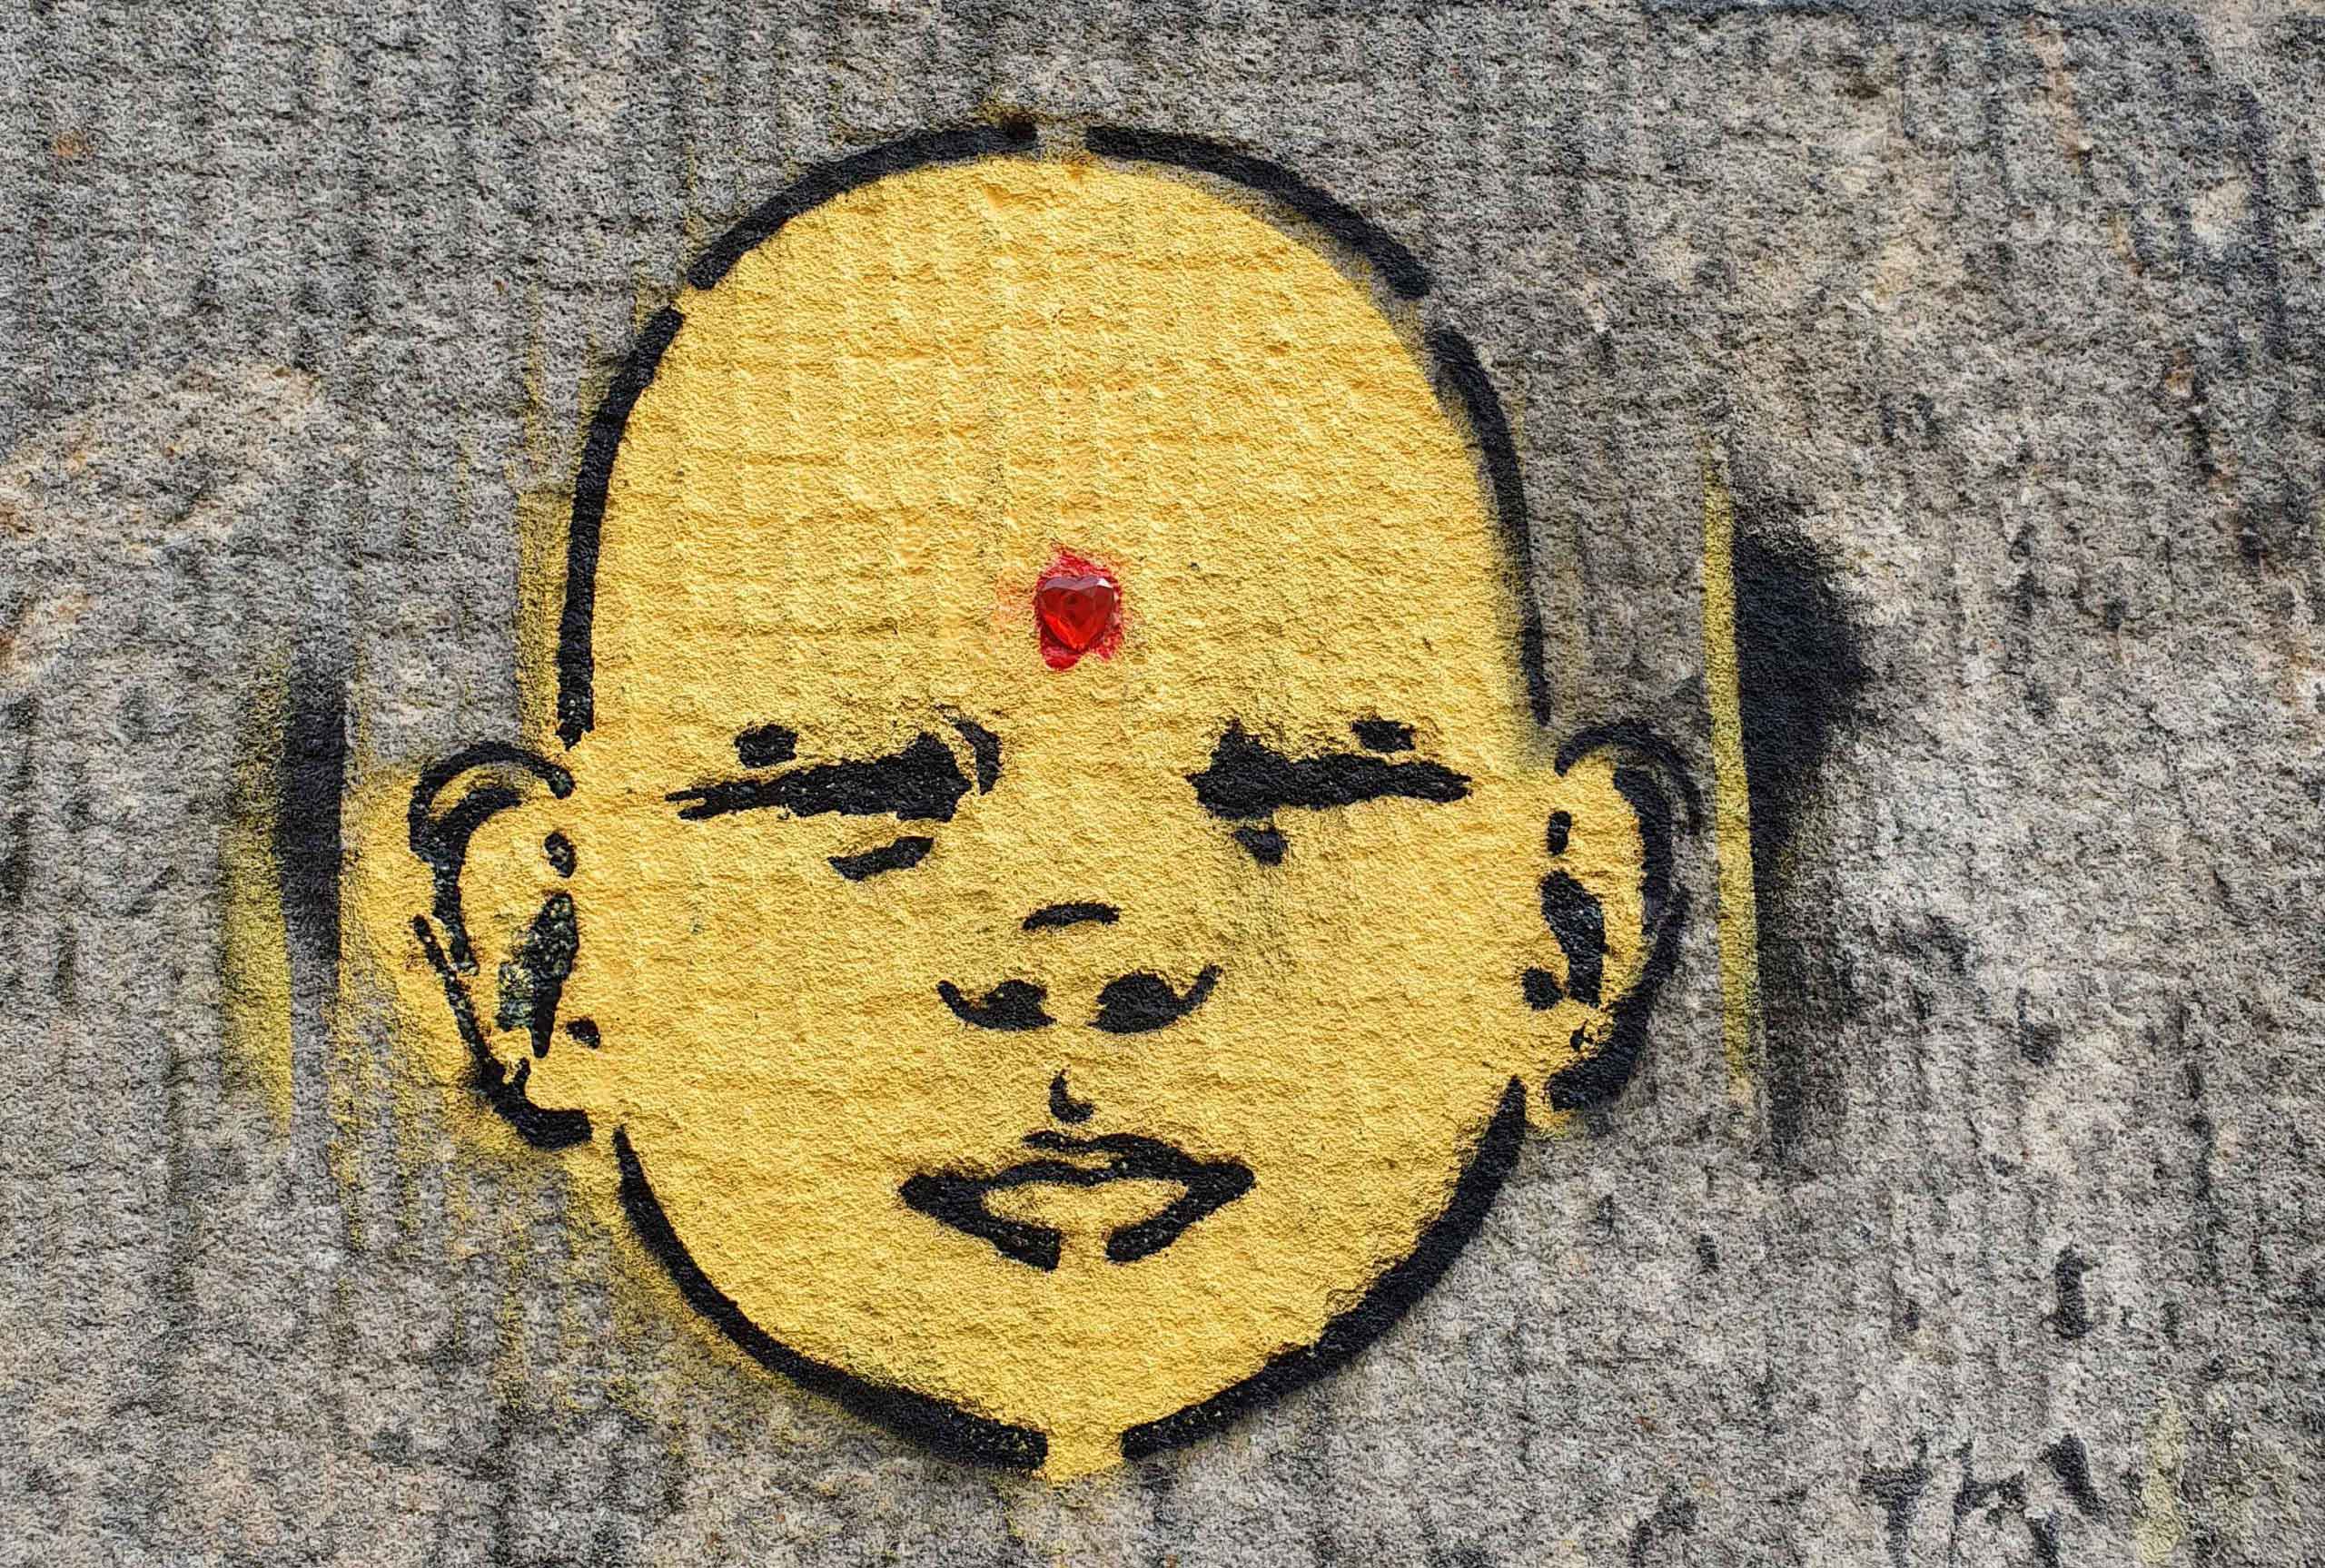 Street Art: gemaltes gelbes Kindergesicht mit rotem Herz-Bindi auf der Stirn